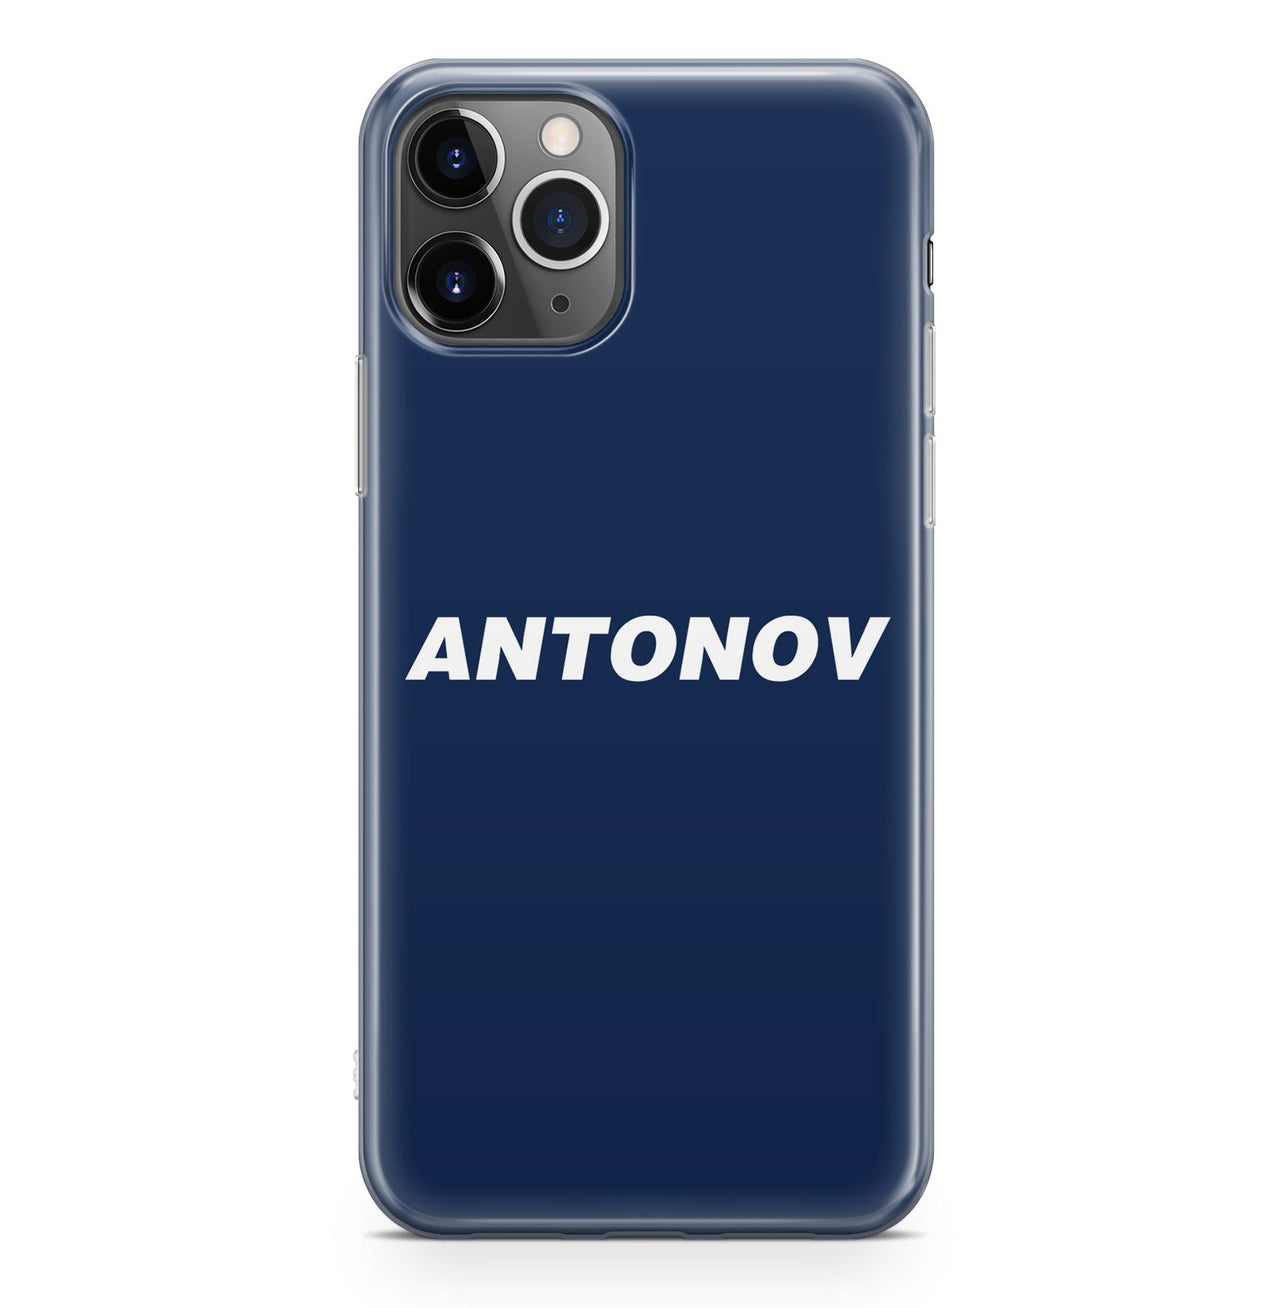 Antonov & Text Designed iPhone Cases